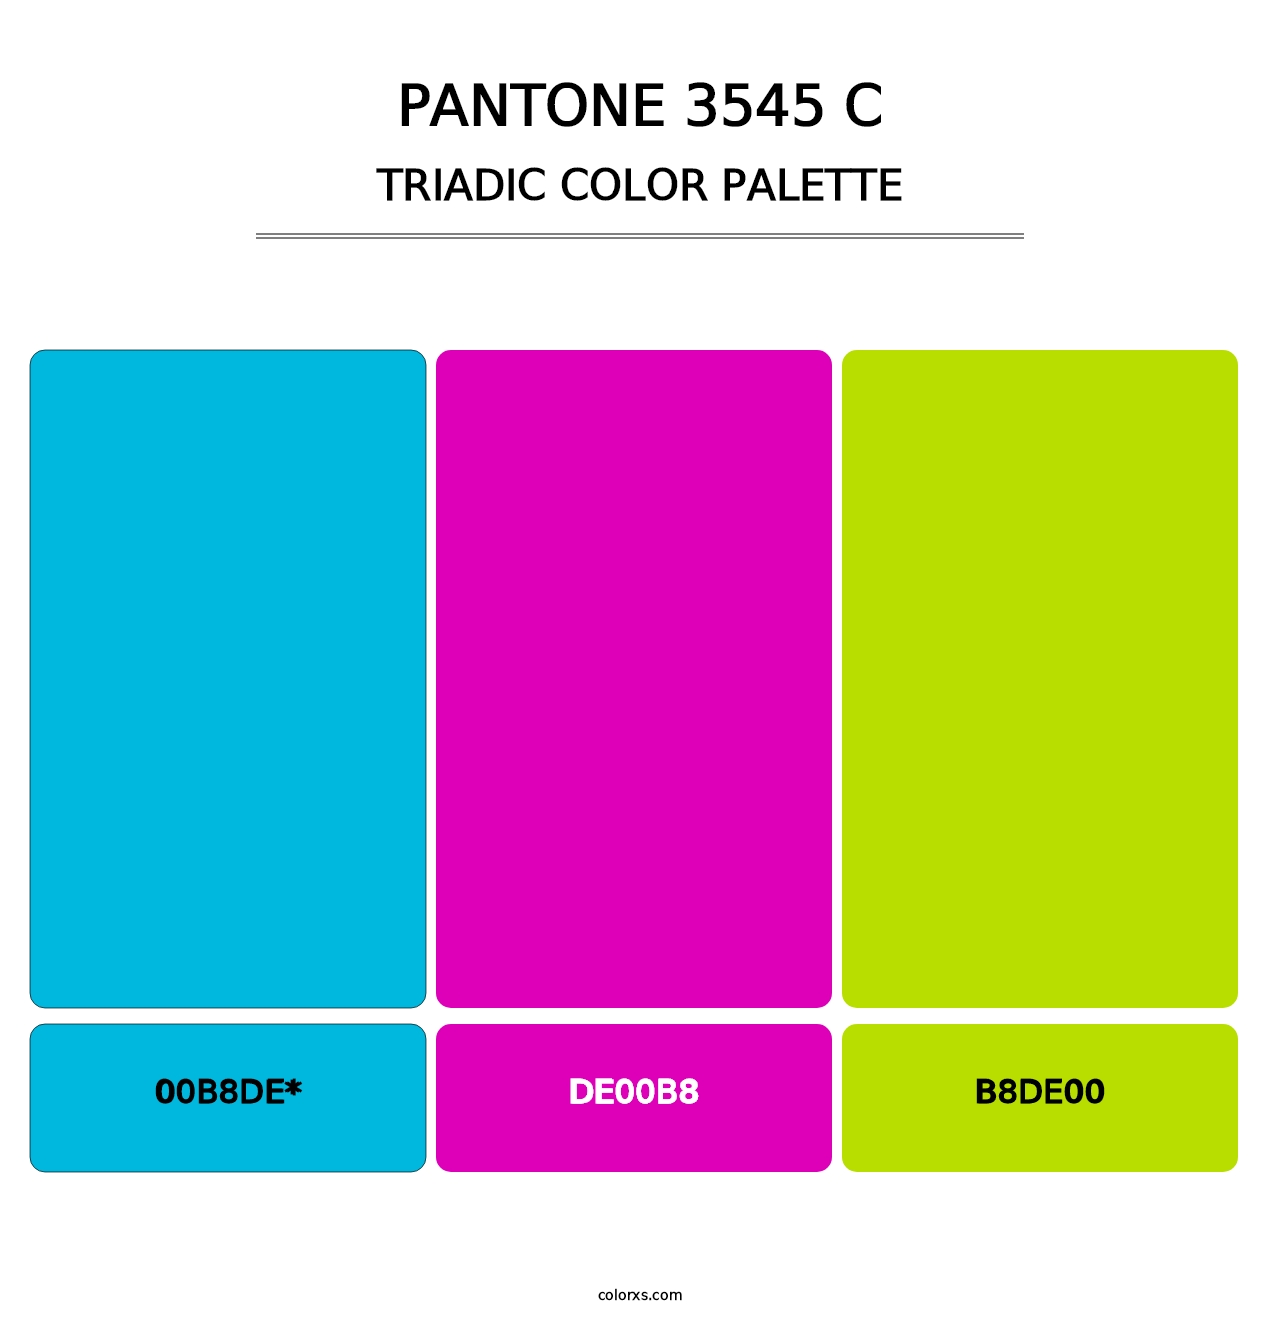 PANTONE 3545 C - Triadic Color Palette